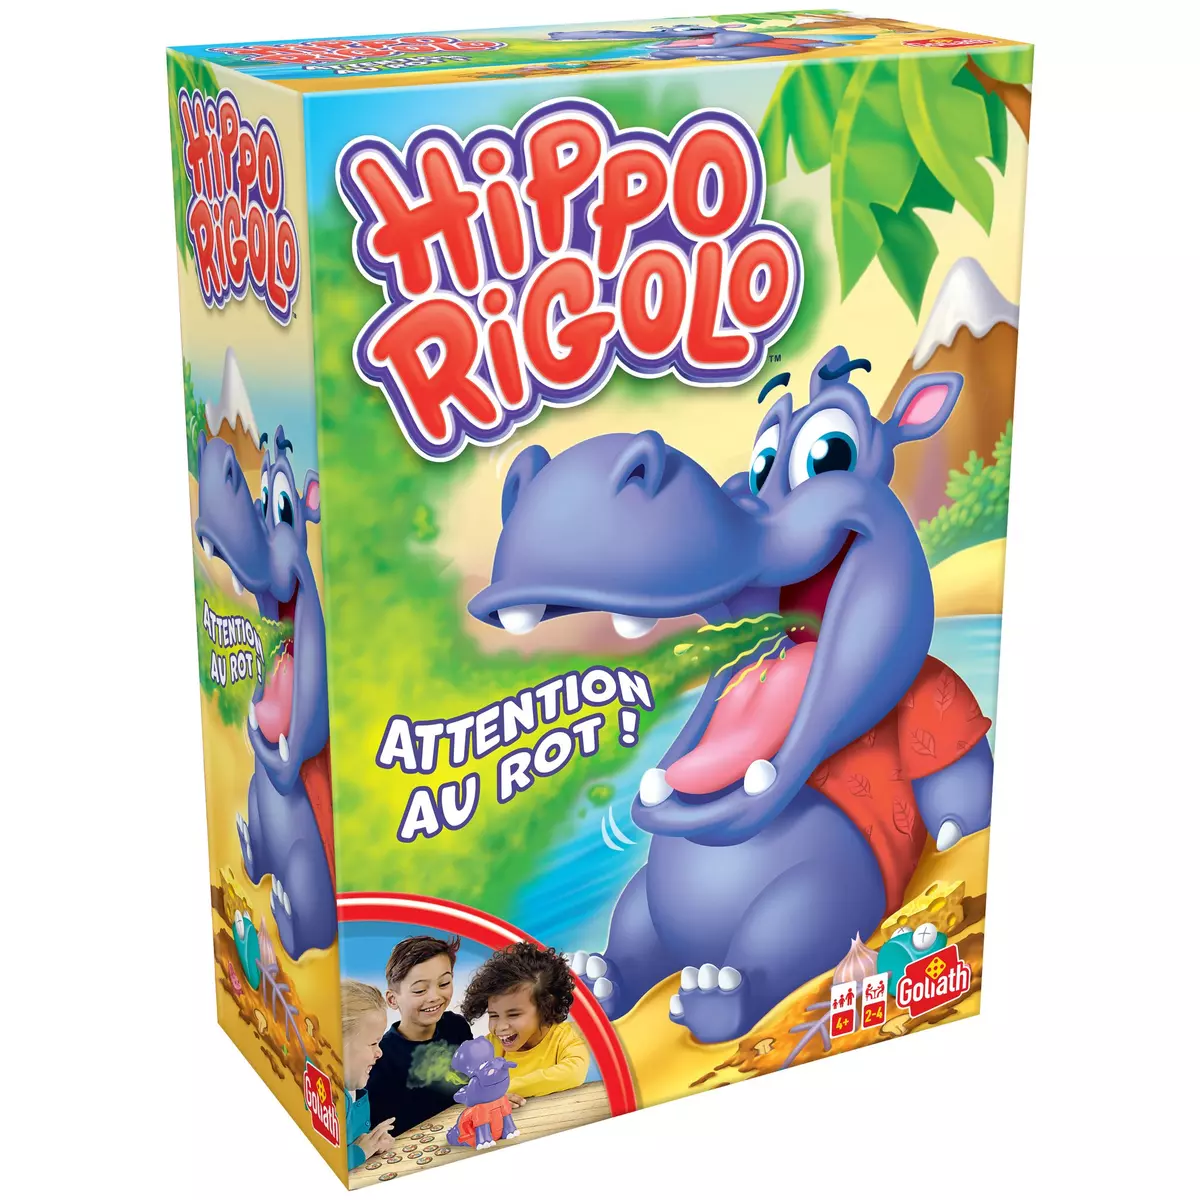 GOLIATH Hippo rigolo - Burping Bobby